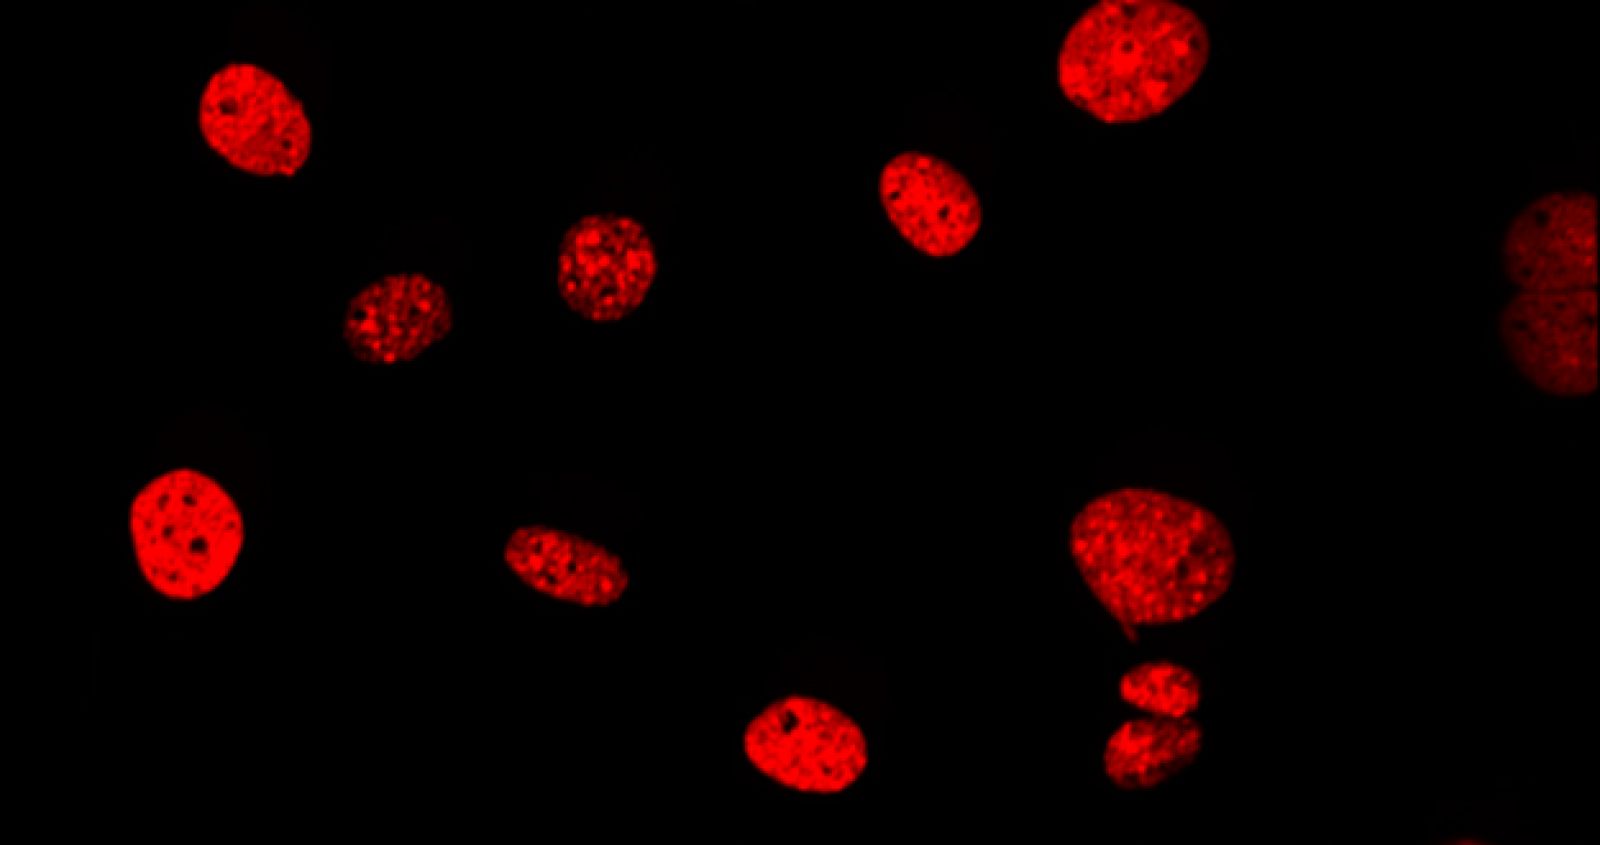 Células tumorales con daño en el ADN celular (rojo) después del tratamiento con etopósido.